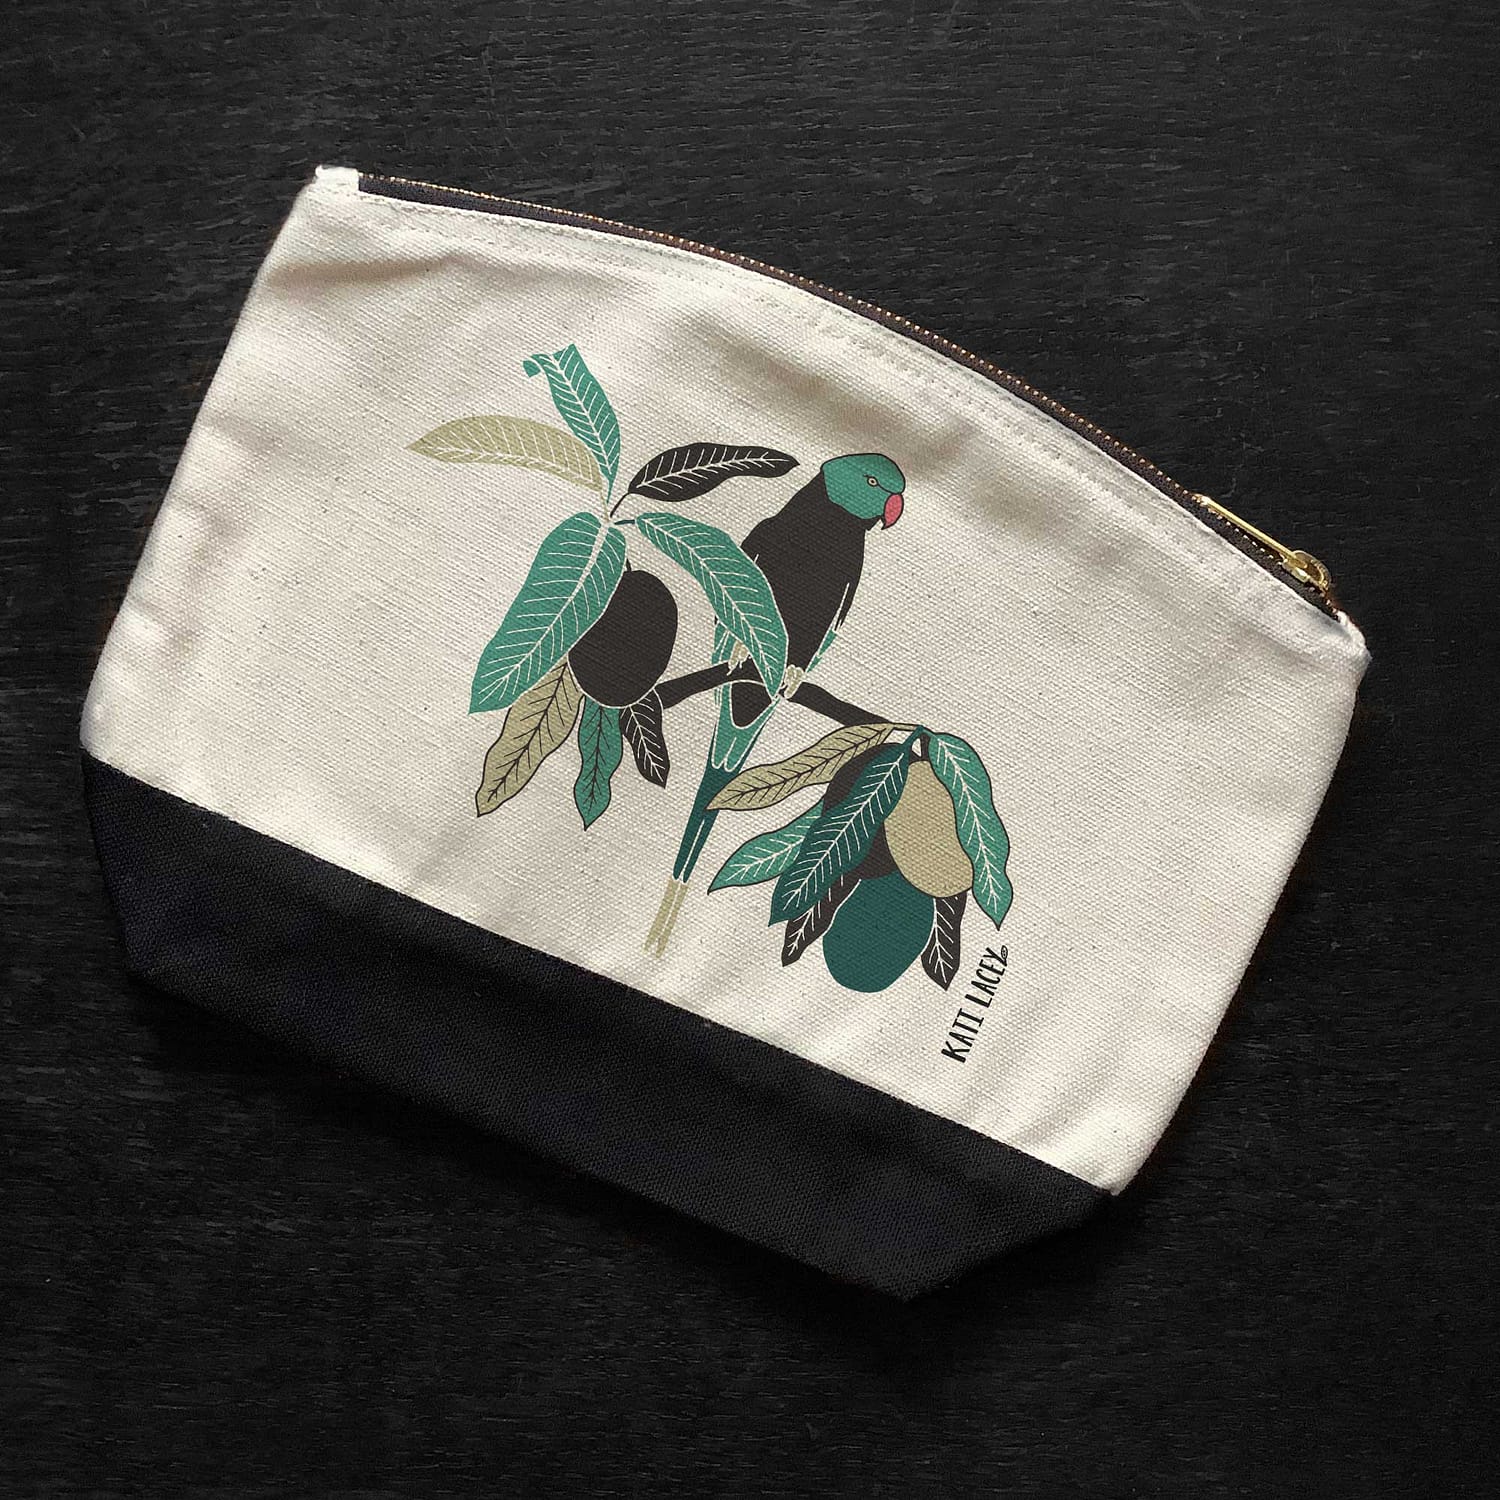 Parakeet on pouch-washbag-toiletry bag-pencil case-make up bag-storage bag for travel-medication bag-luxury